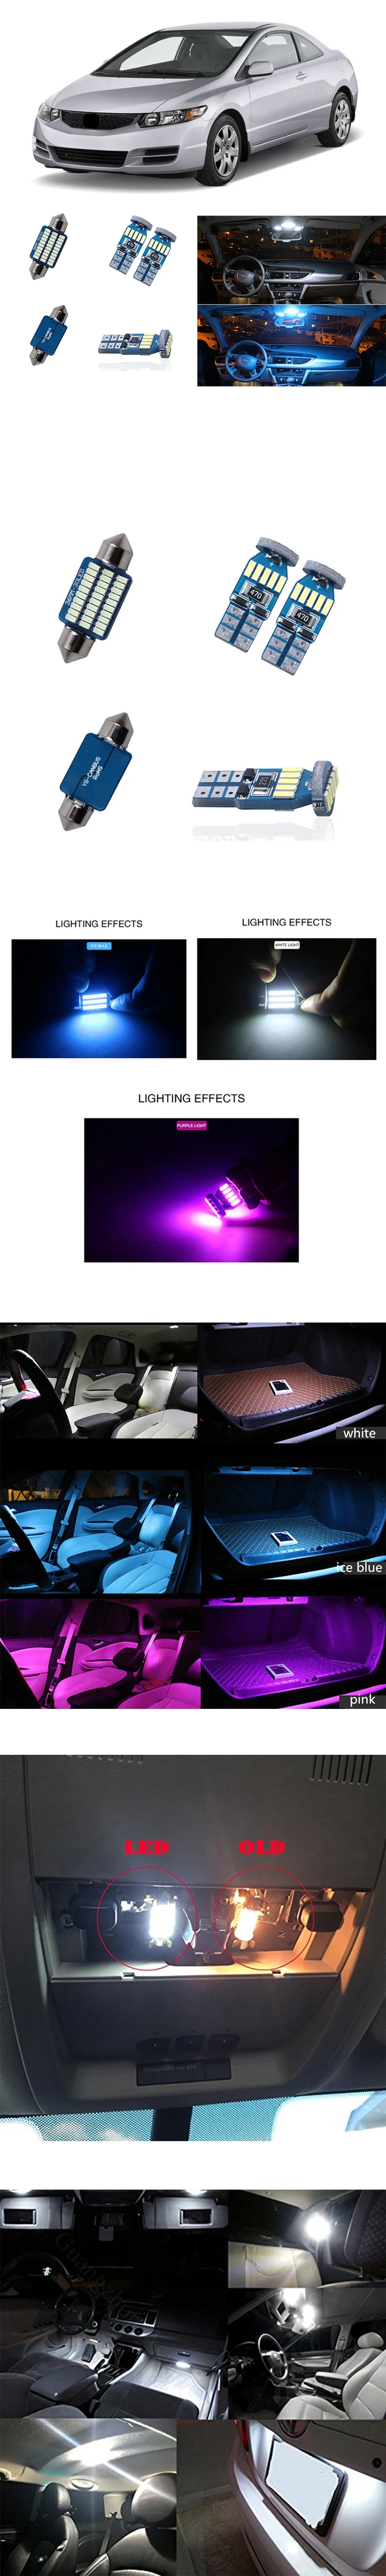 8 шт. Canbus светодиодный 12 В авто подсветка для салона автомобиля комплект для Honda Civic 2006-2011 Карта Купол багажник номерные знаки белый лед синий